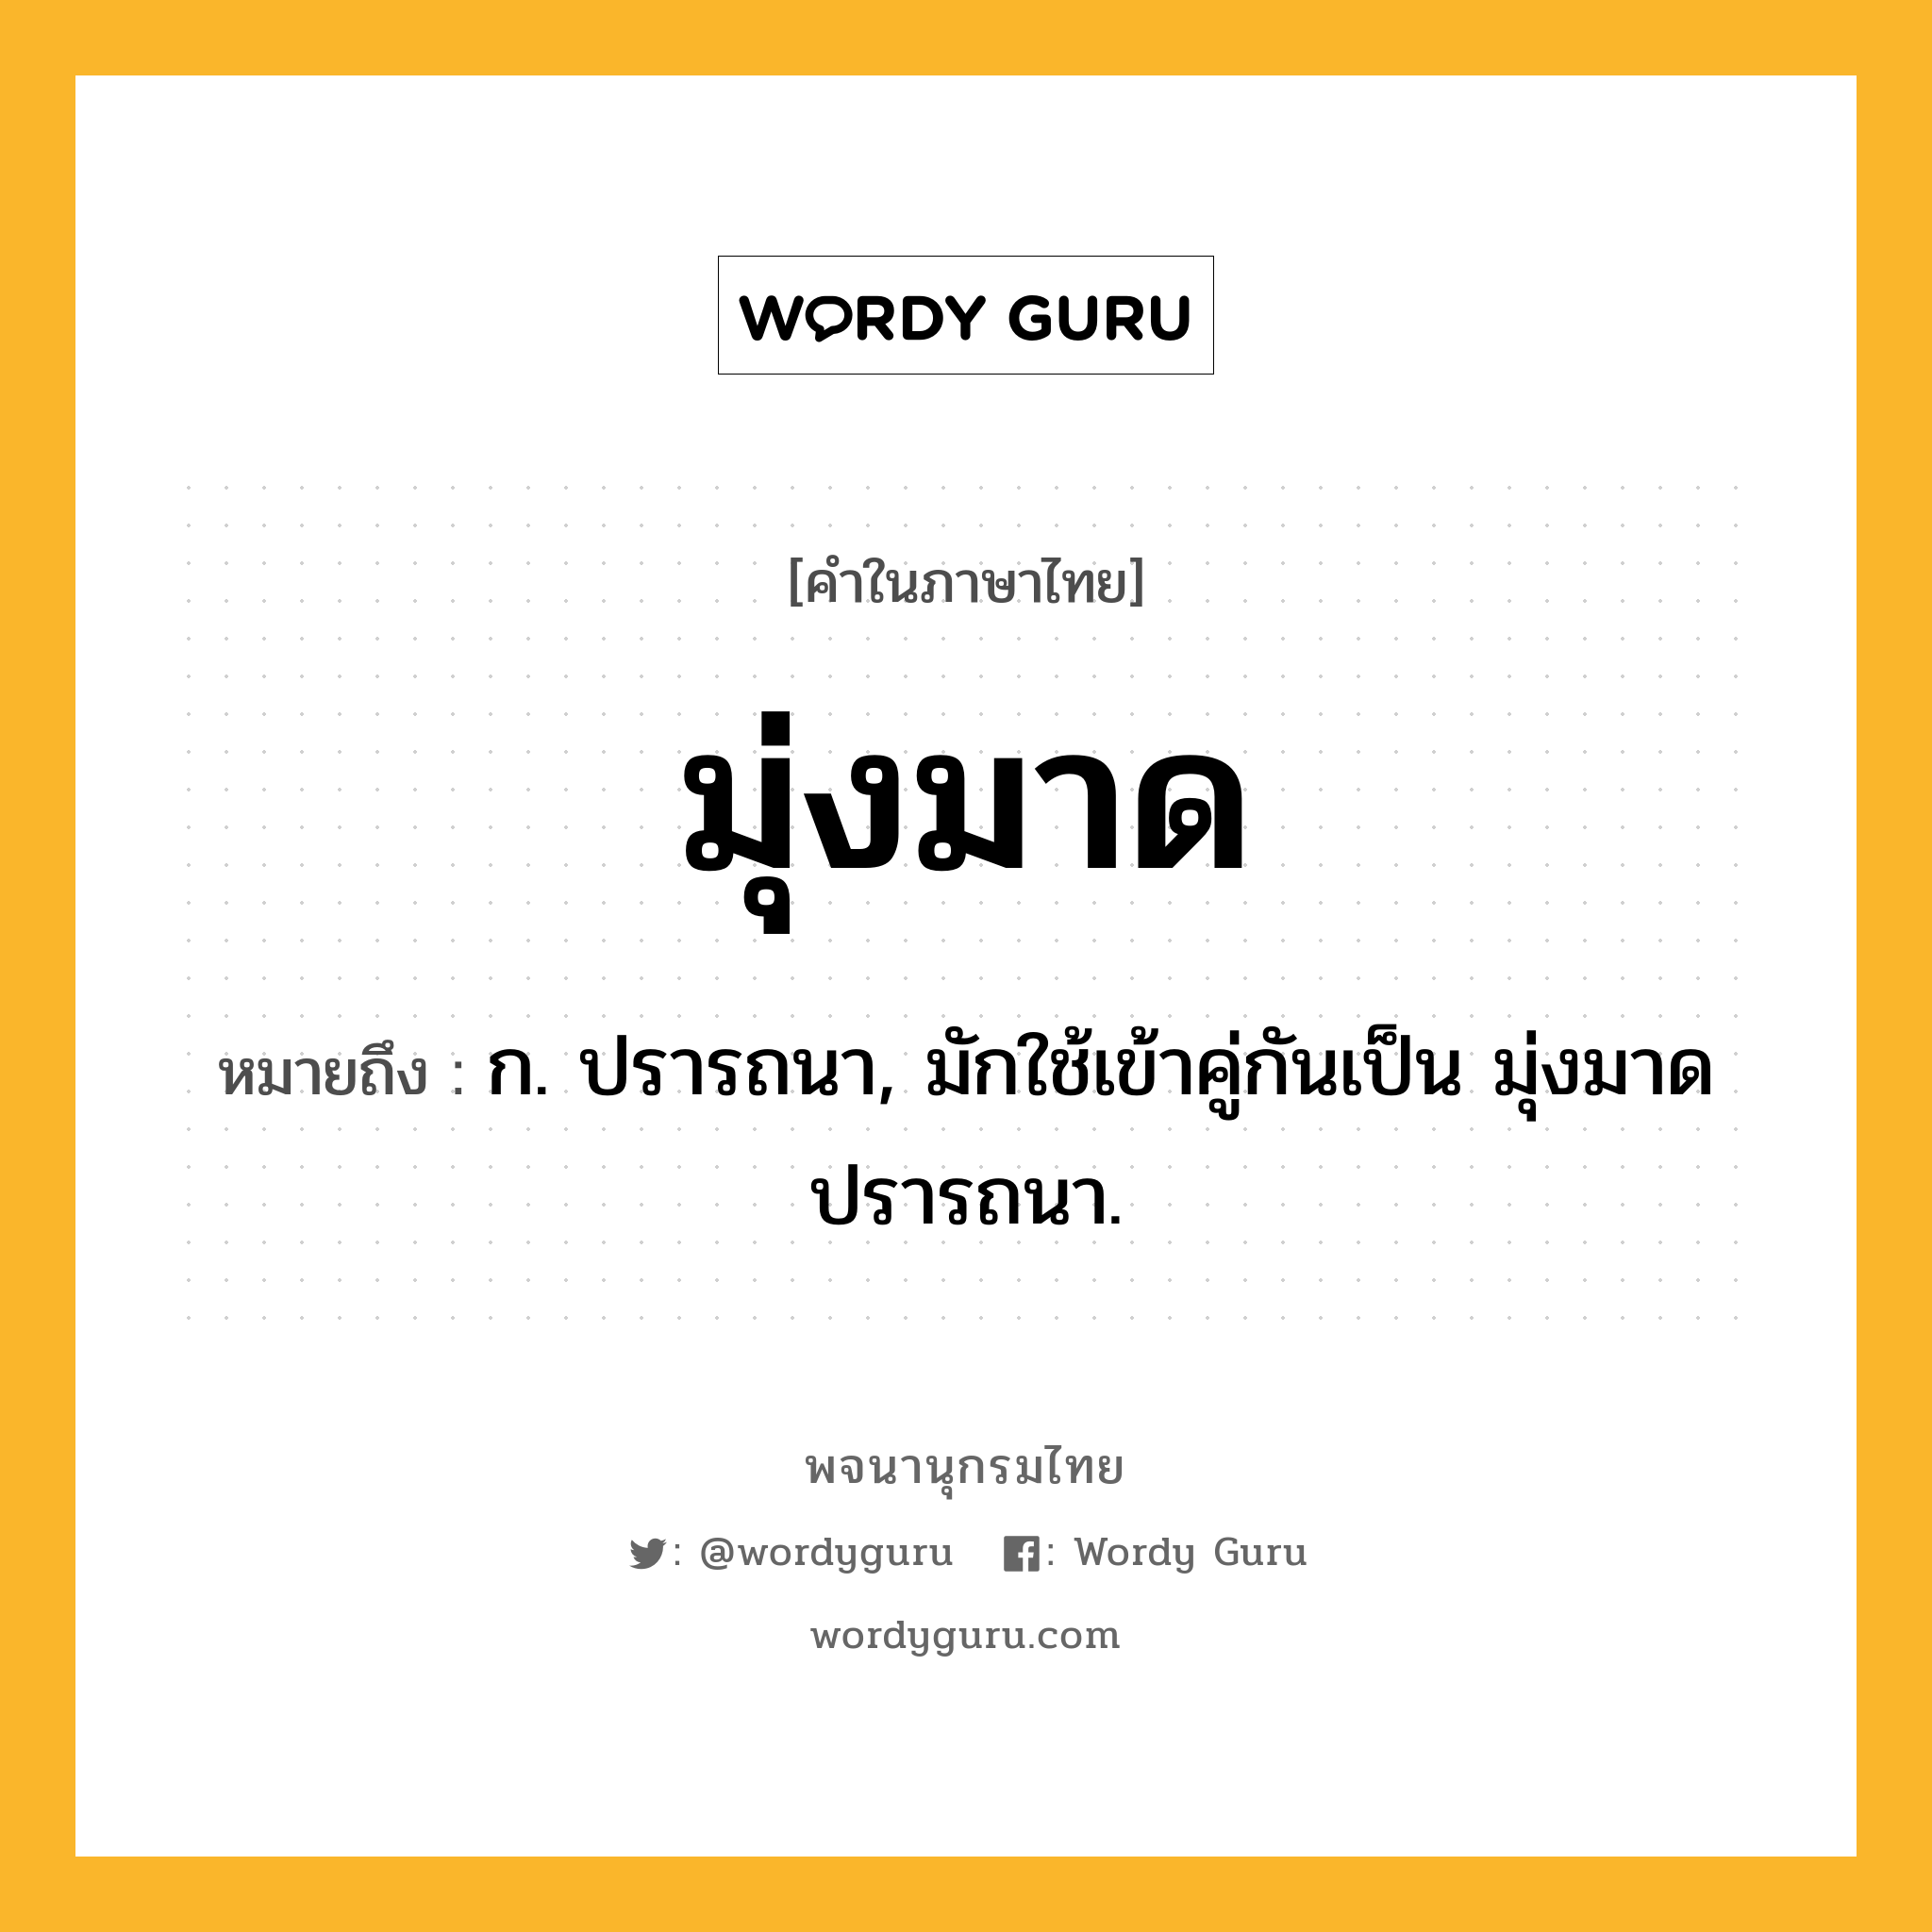 มุ่งมาด หมายถึงอะไร?, คำในภาษาไทย มุ่งมาด หมายถึง ก. ปรารถนา, มักใช้เข้าคู่กันเป็น มุ่งมาดปรารถนา.